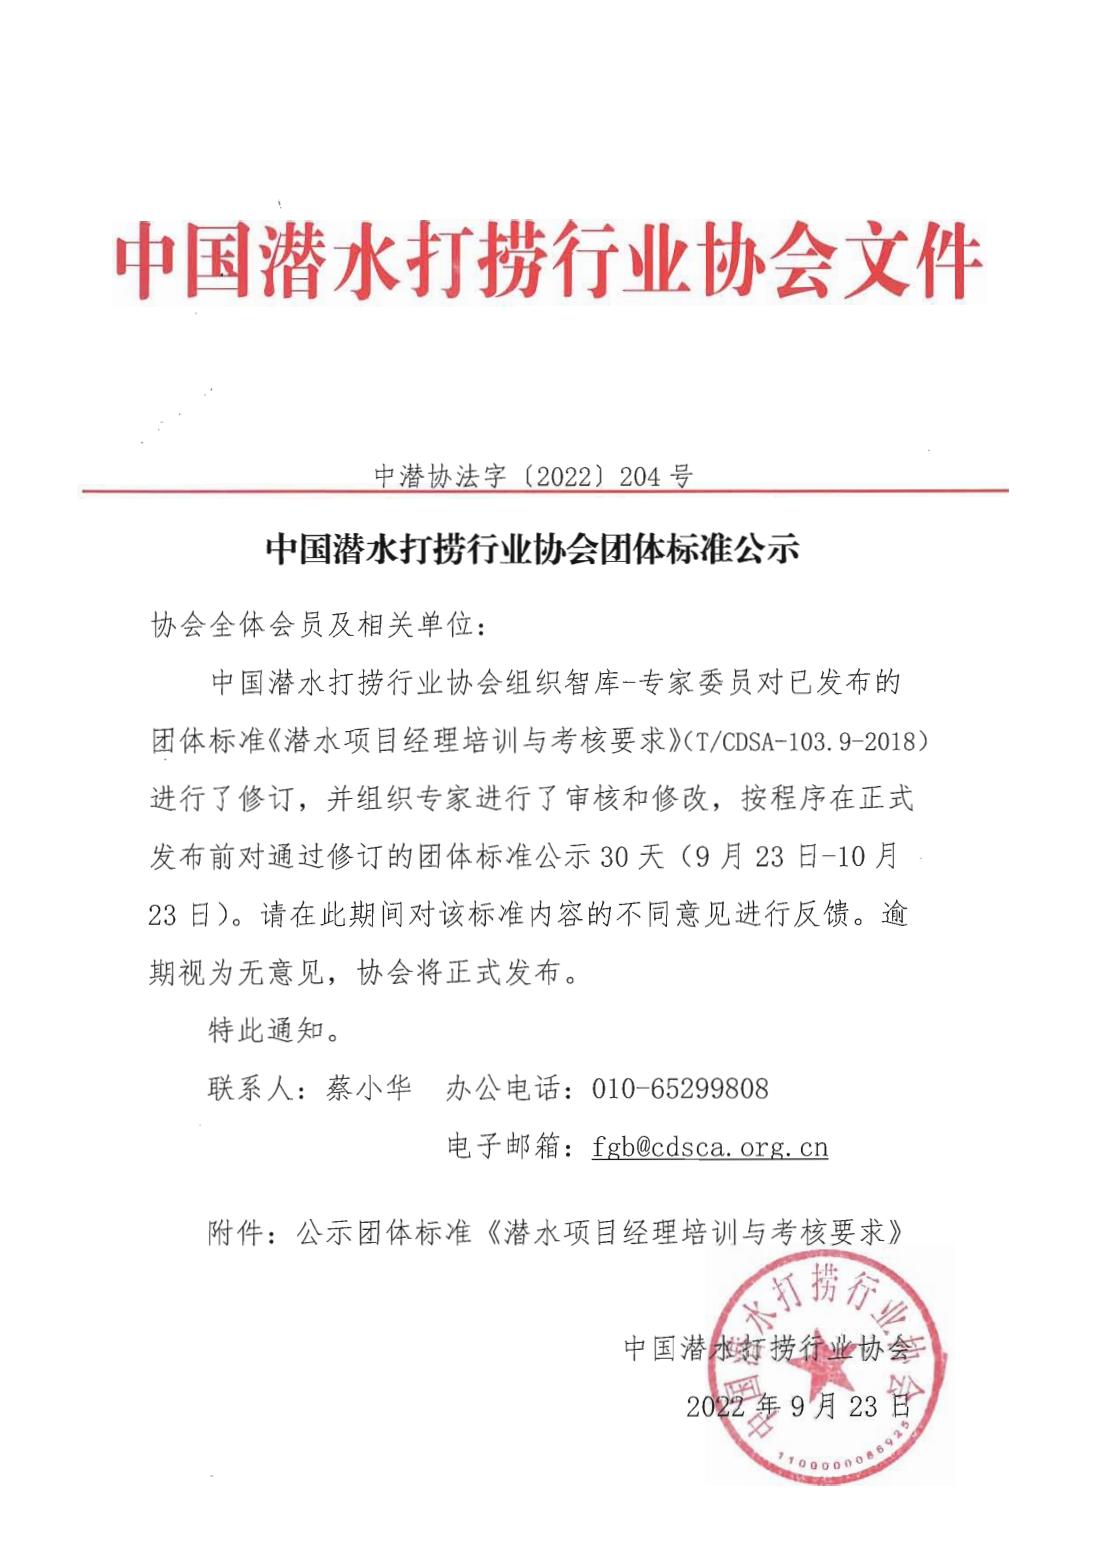 中国潜水打捞行业协会团体标准公示 中潜协法字［2022］204 号_00.jpg